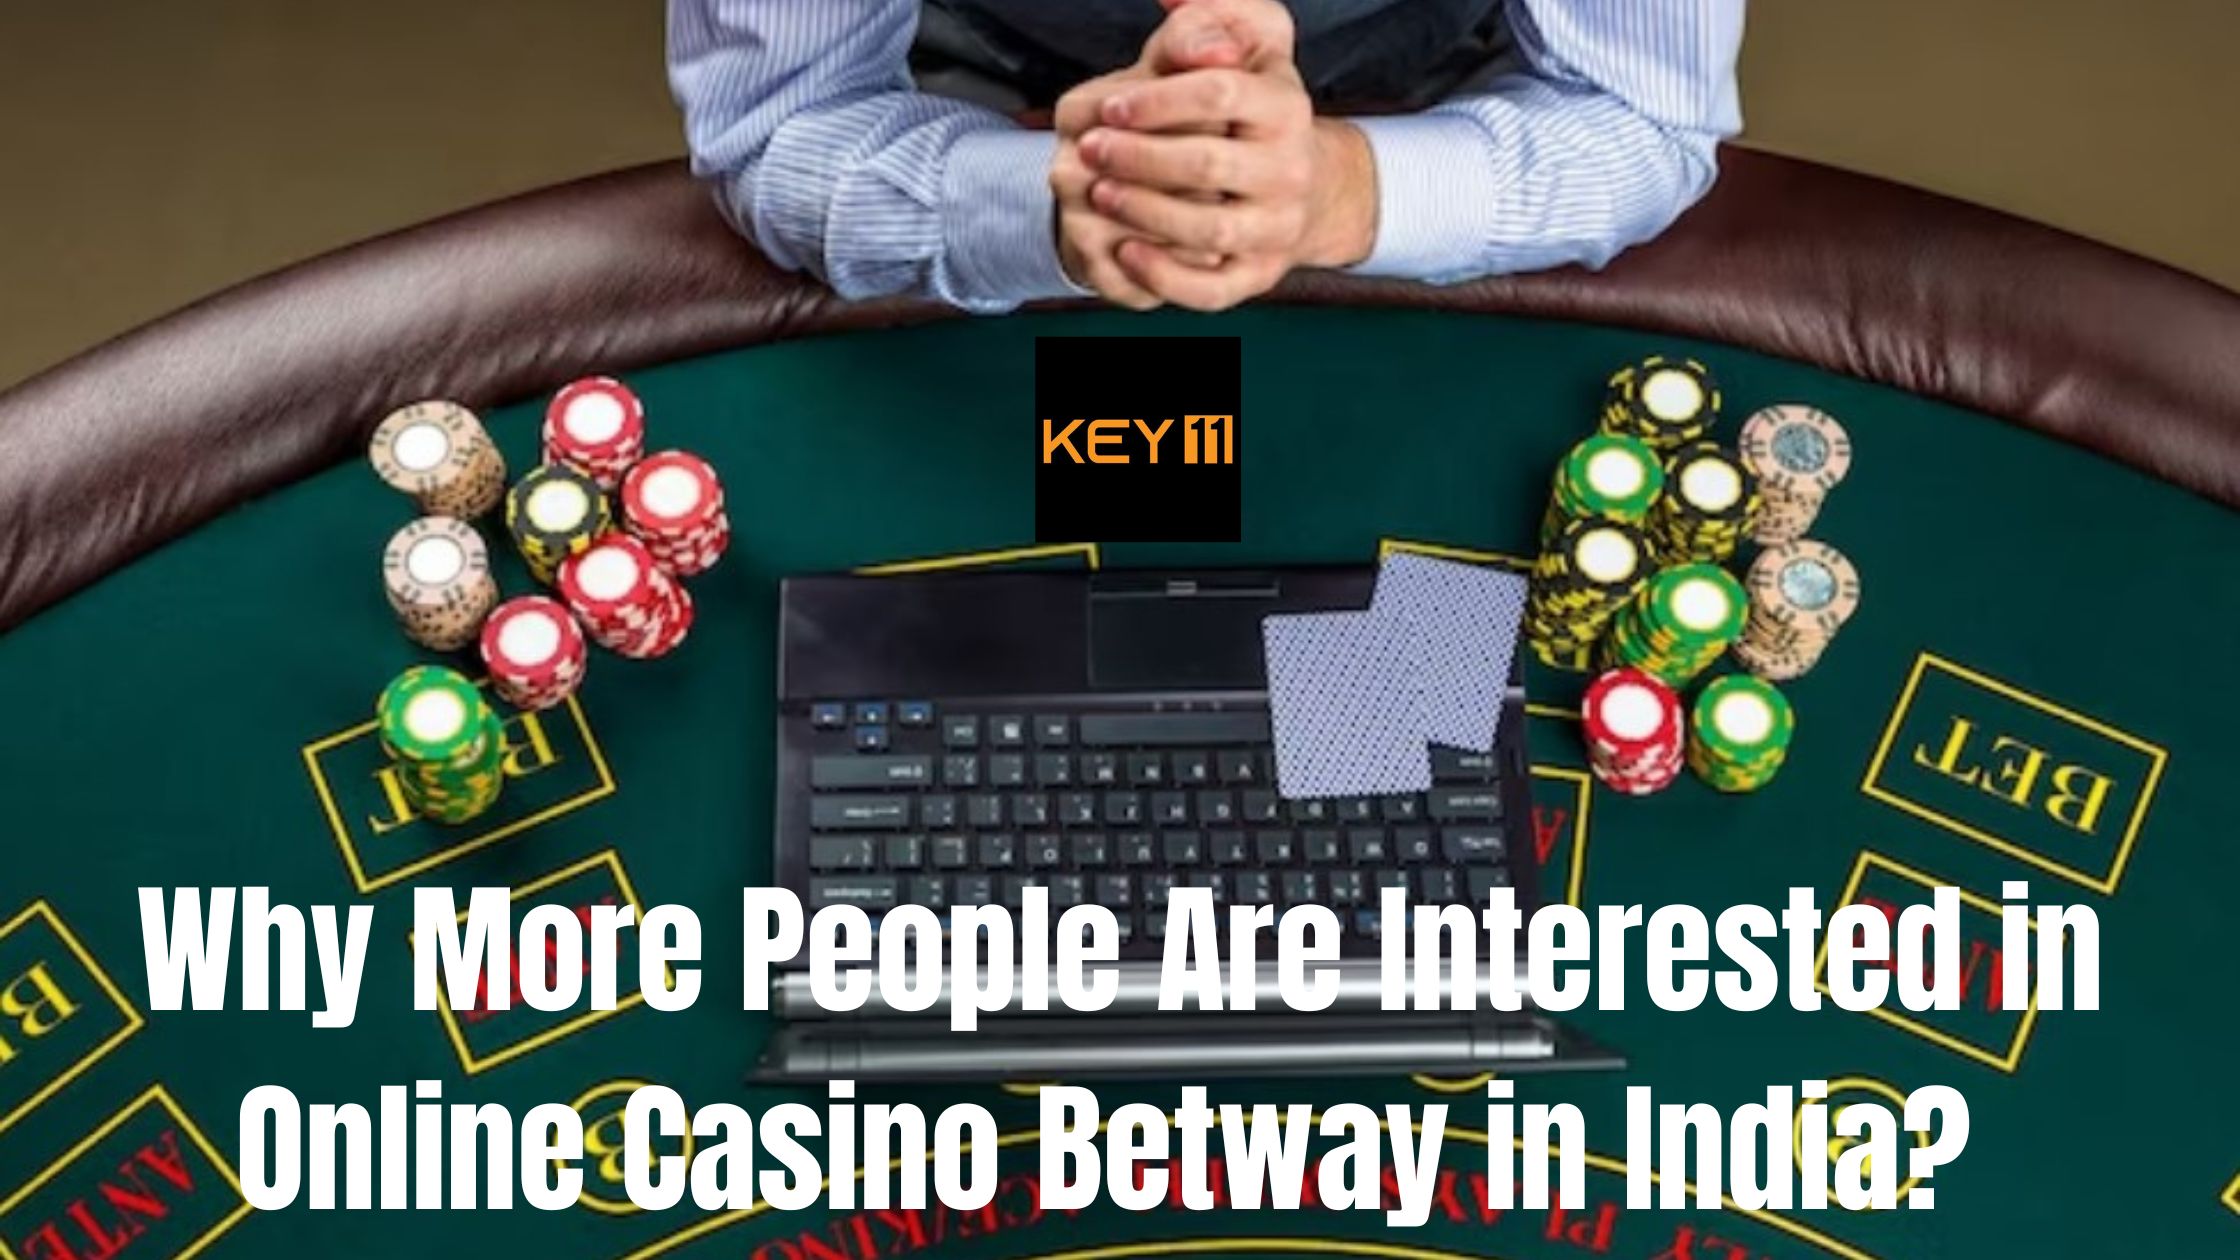 Online Casino Betway in India